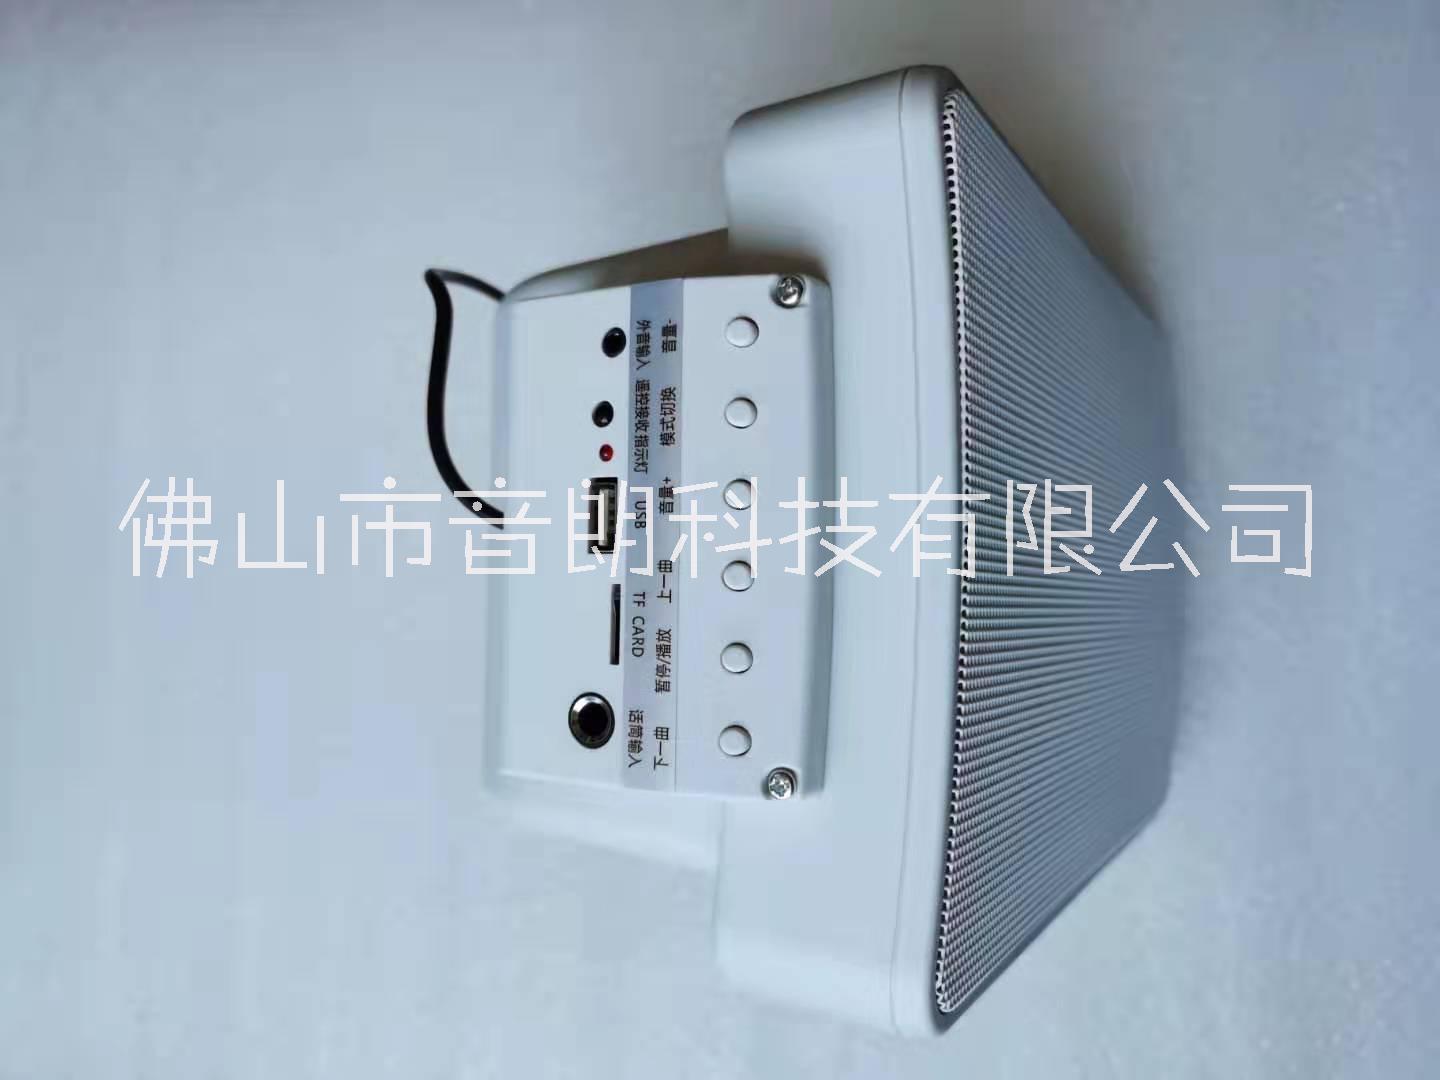 YILON音朗公共广播系统有源蓝牙时款音箱有4寸/5.5寸、6.5寸可选可接副箱